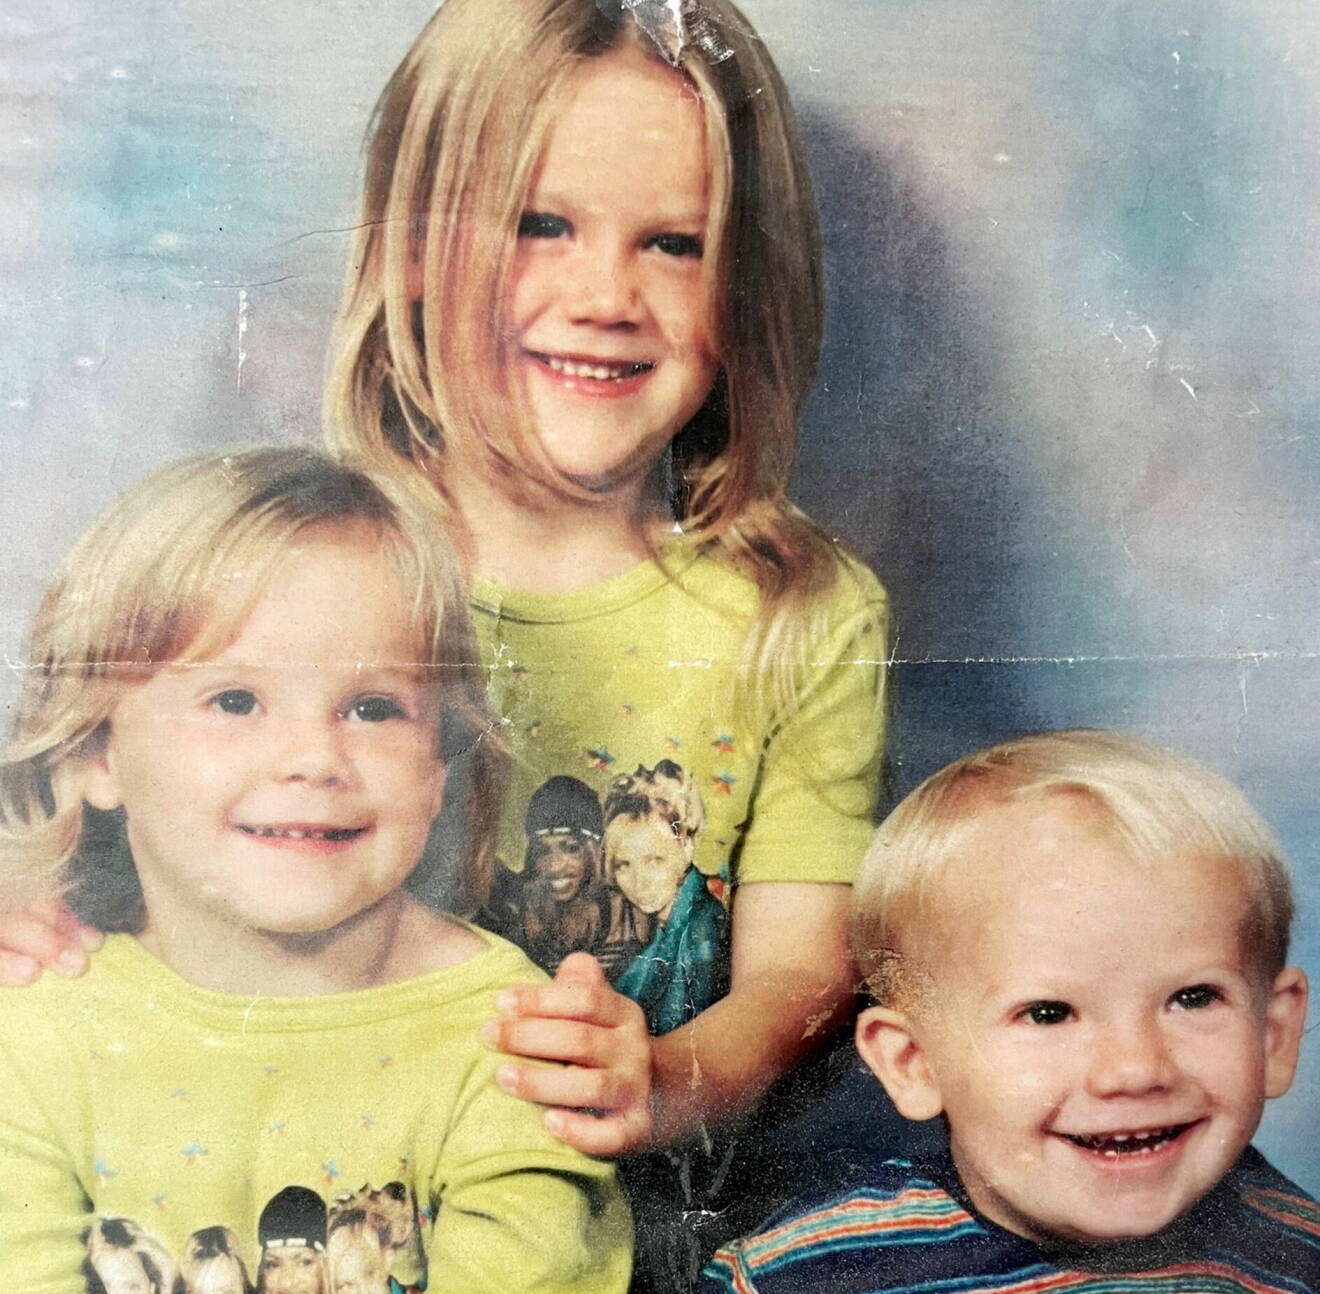 Gammalt familjefoto på Mckyla (nere till vänster), hennes yngre bror Callum (längst nere till höger) och storasyster Nicole.